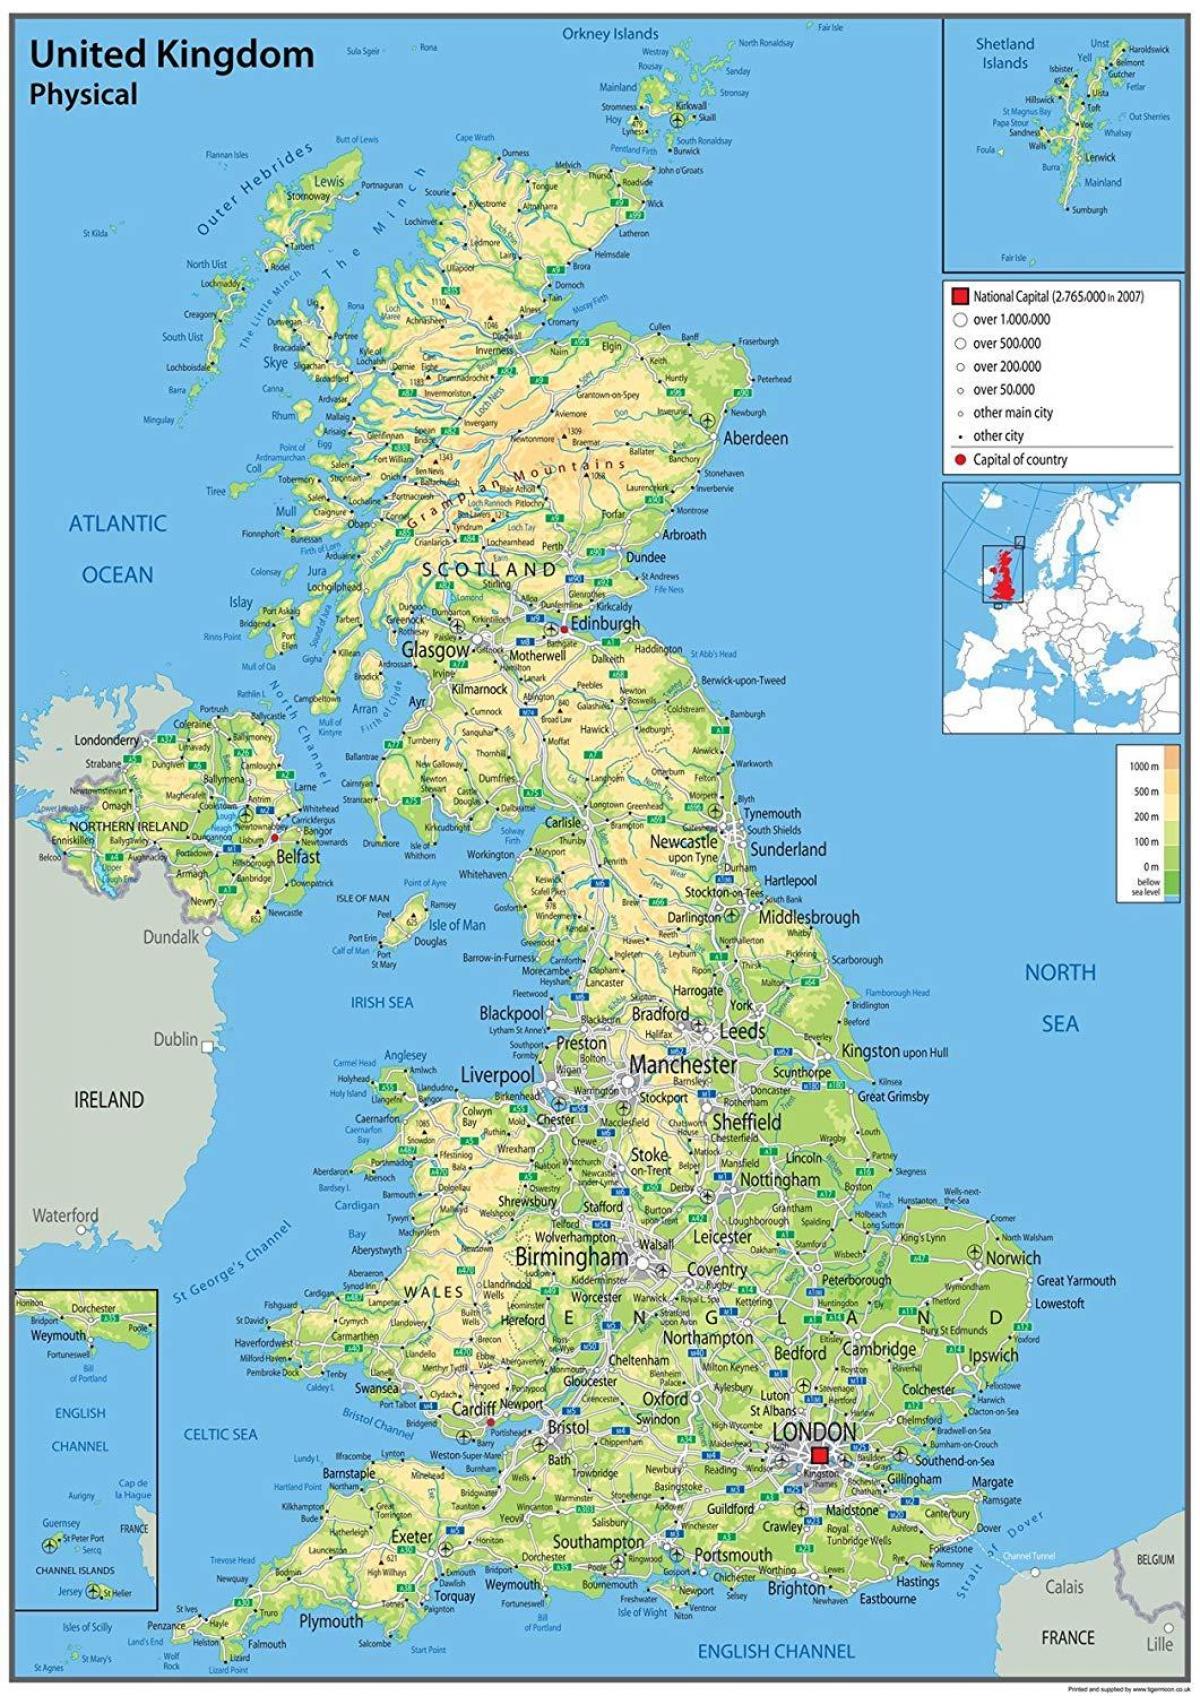 Mapa Geogr Fico Del Reino Unido Uk Topograf A Y Caracter Sticas F Sicas Del Reino Unido Uk